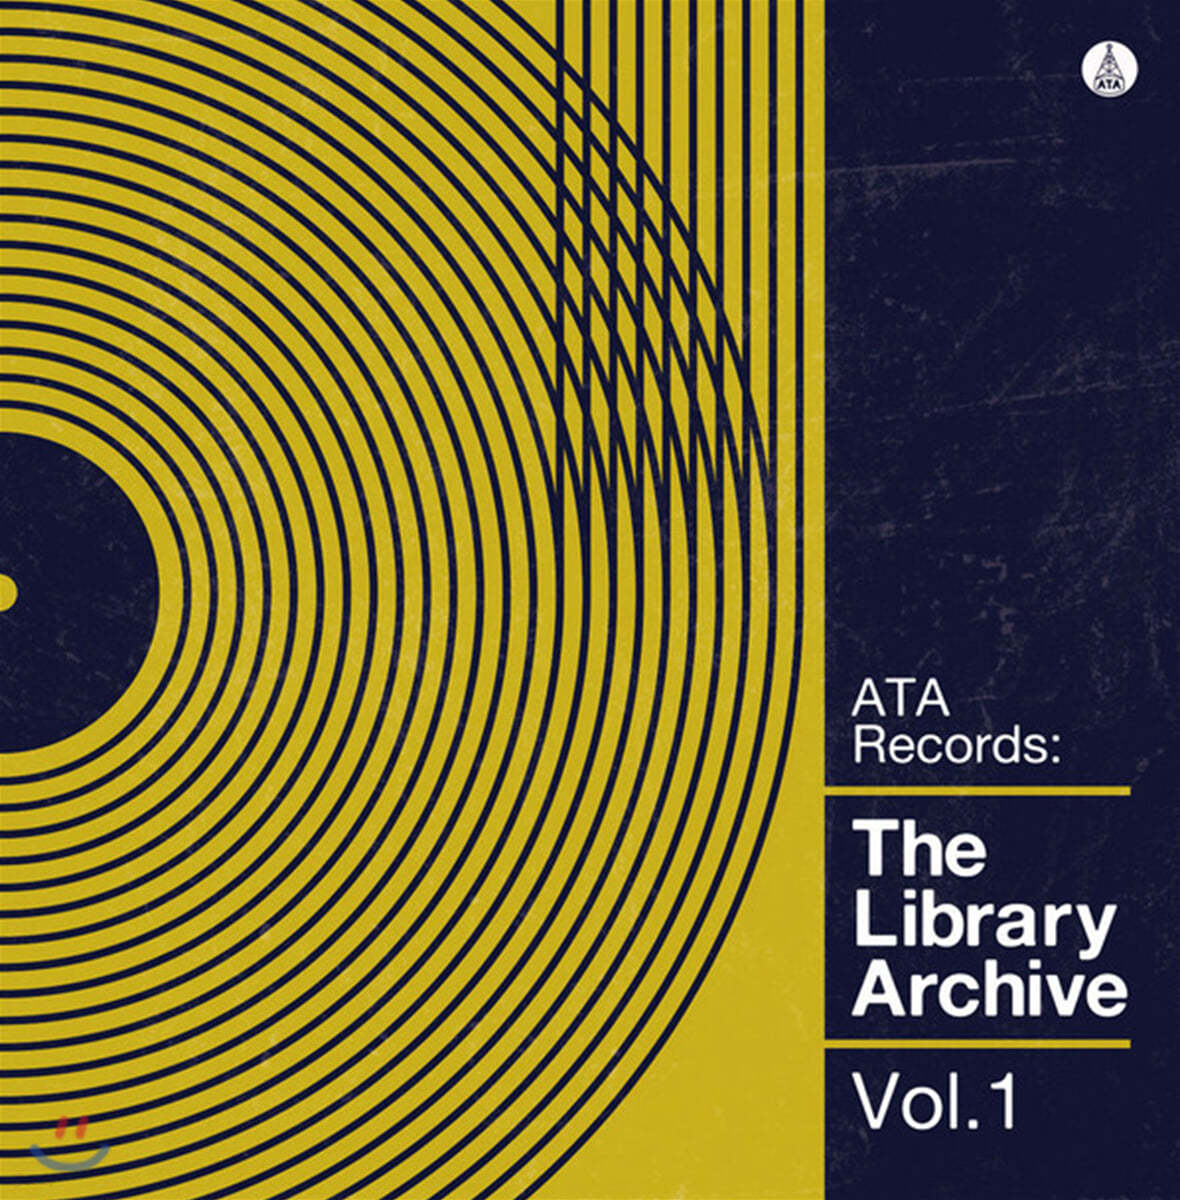 ATA Records 레이블 라운지 음악 모음 (The Library Archive Vol. 1) [투명 옐로우 컬러 LP] 